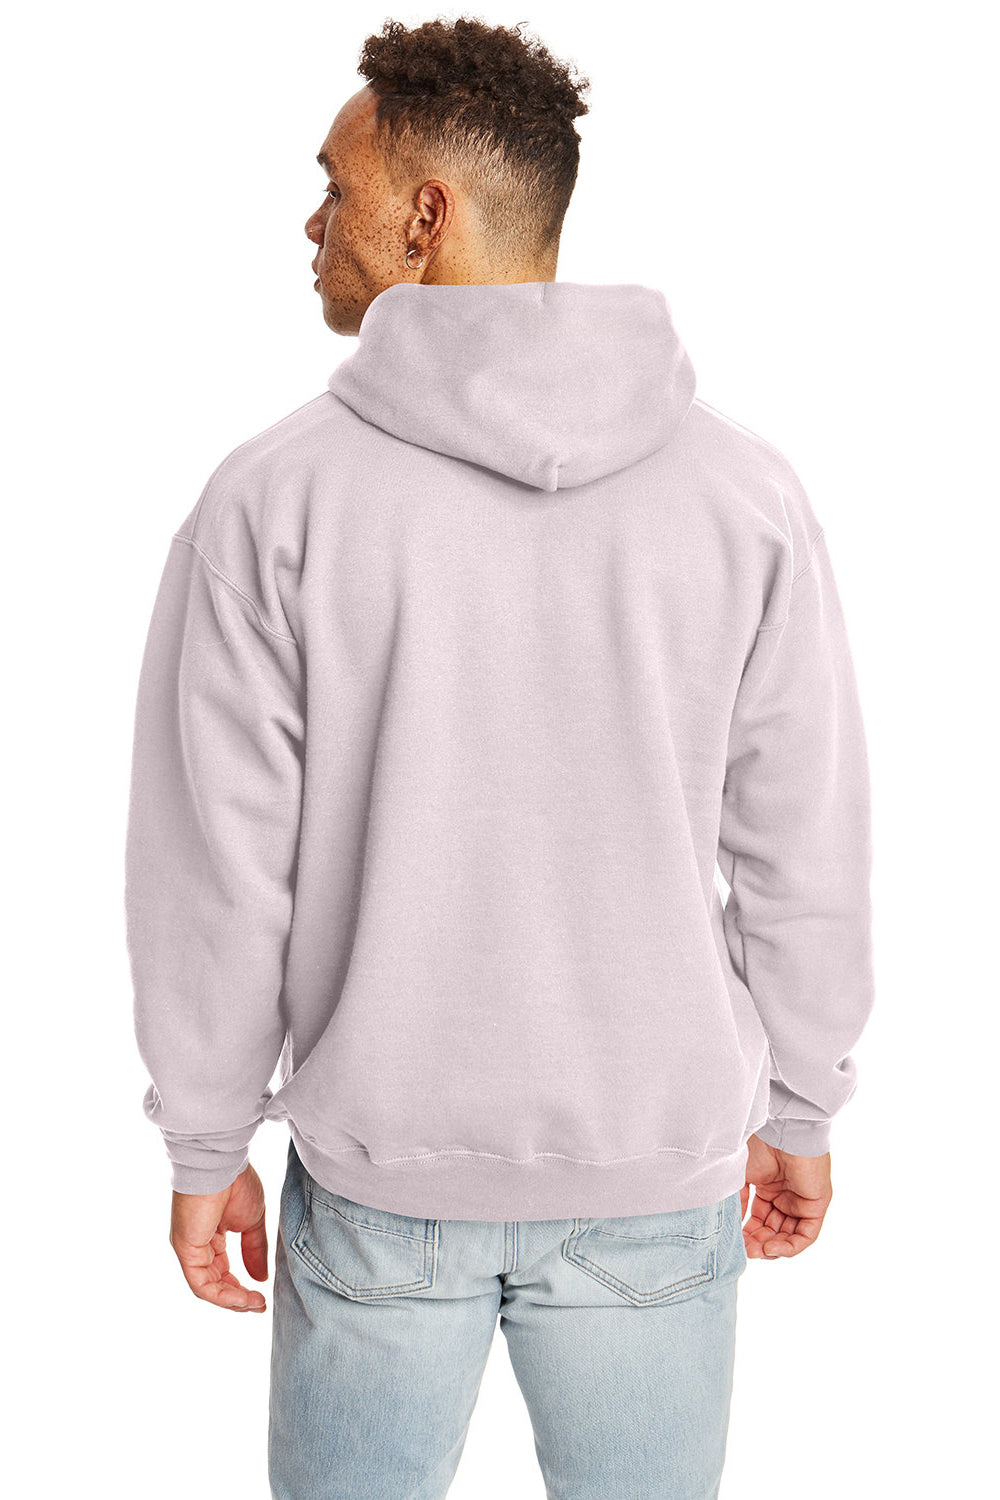 Hanes F170 Mens Ultimate Cotton PrintPro XP Hooded Sweatshirt Hoodie Pale Pink Back